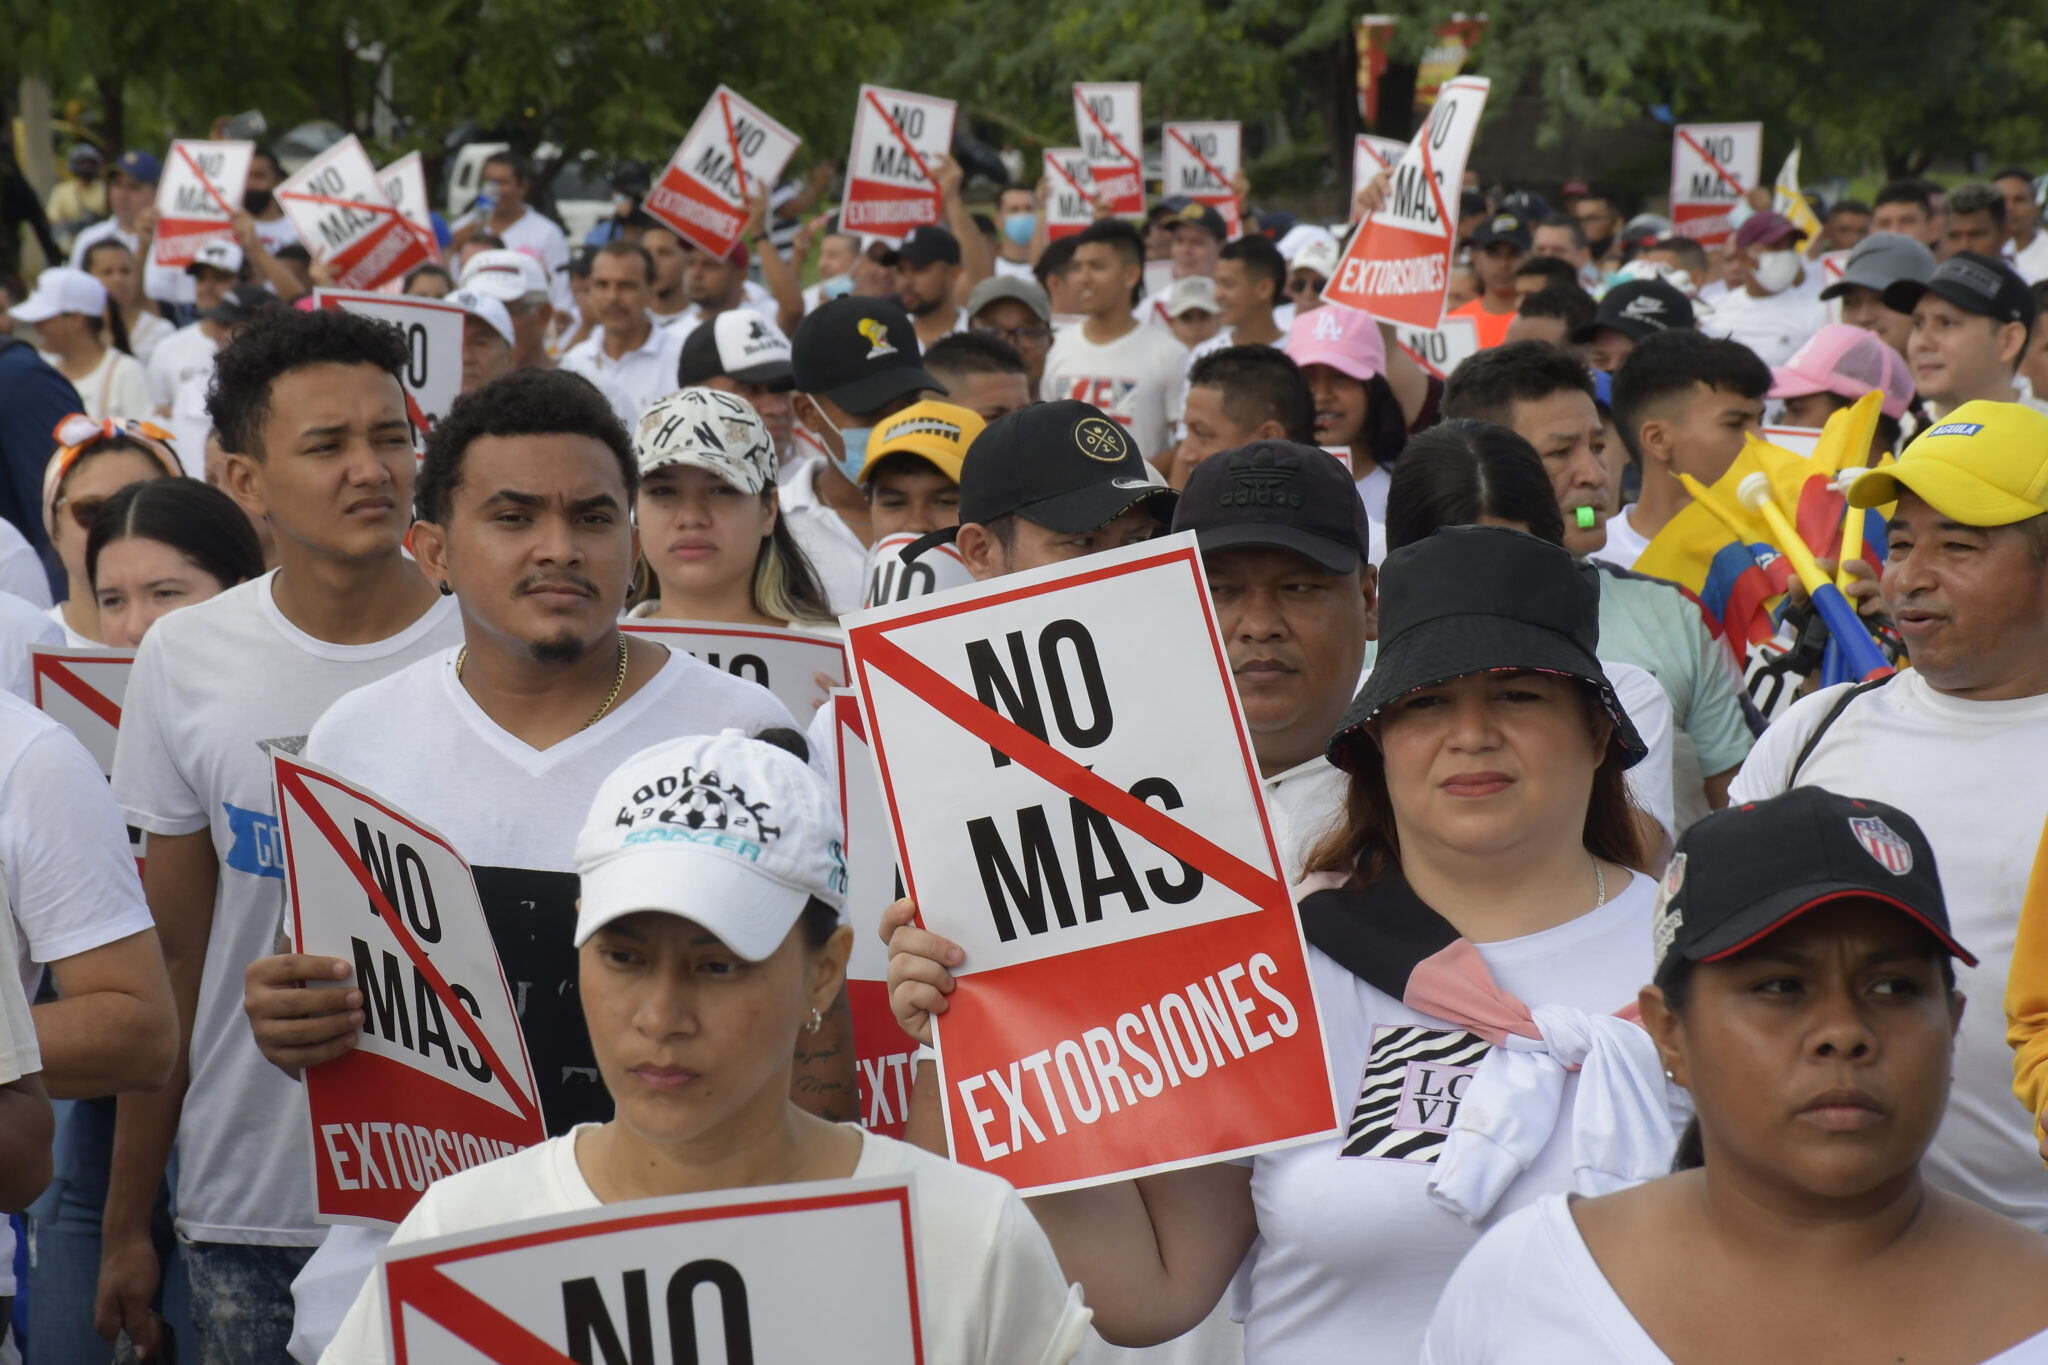 El 7 de septiembre de 2022, la agremiación Comerciantes Unidos por Soledad lideró una marcha multitudinaria contra las extorsiones. Foto: La Liga Contra el Silencio.